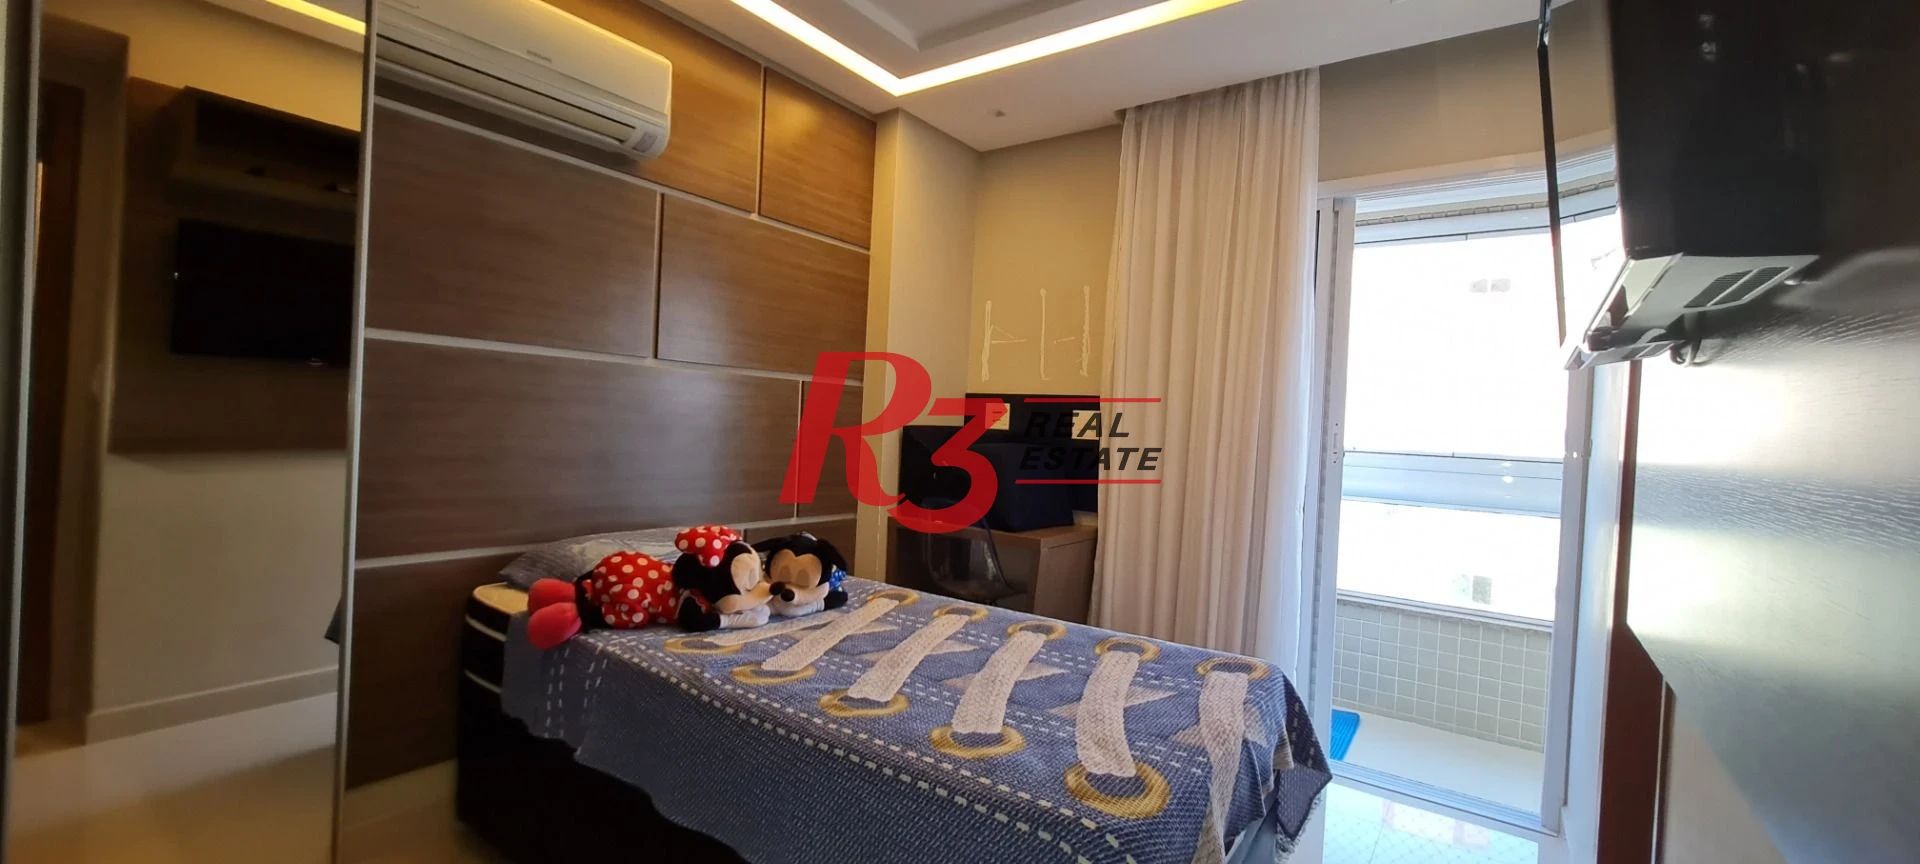 Apartamento com 3 dormitórios à venda, 188 m² por R$ 1.320.000,00 - Caiçara - Praia Grande/SP